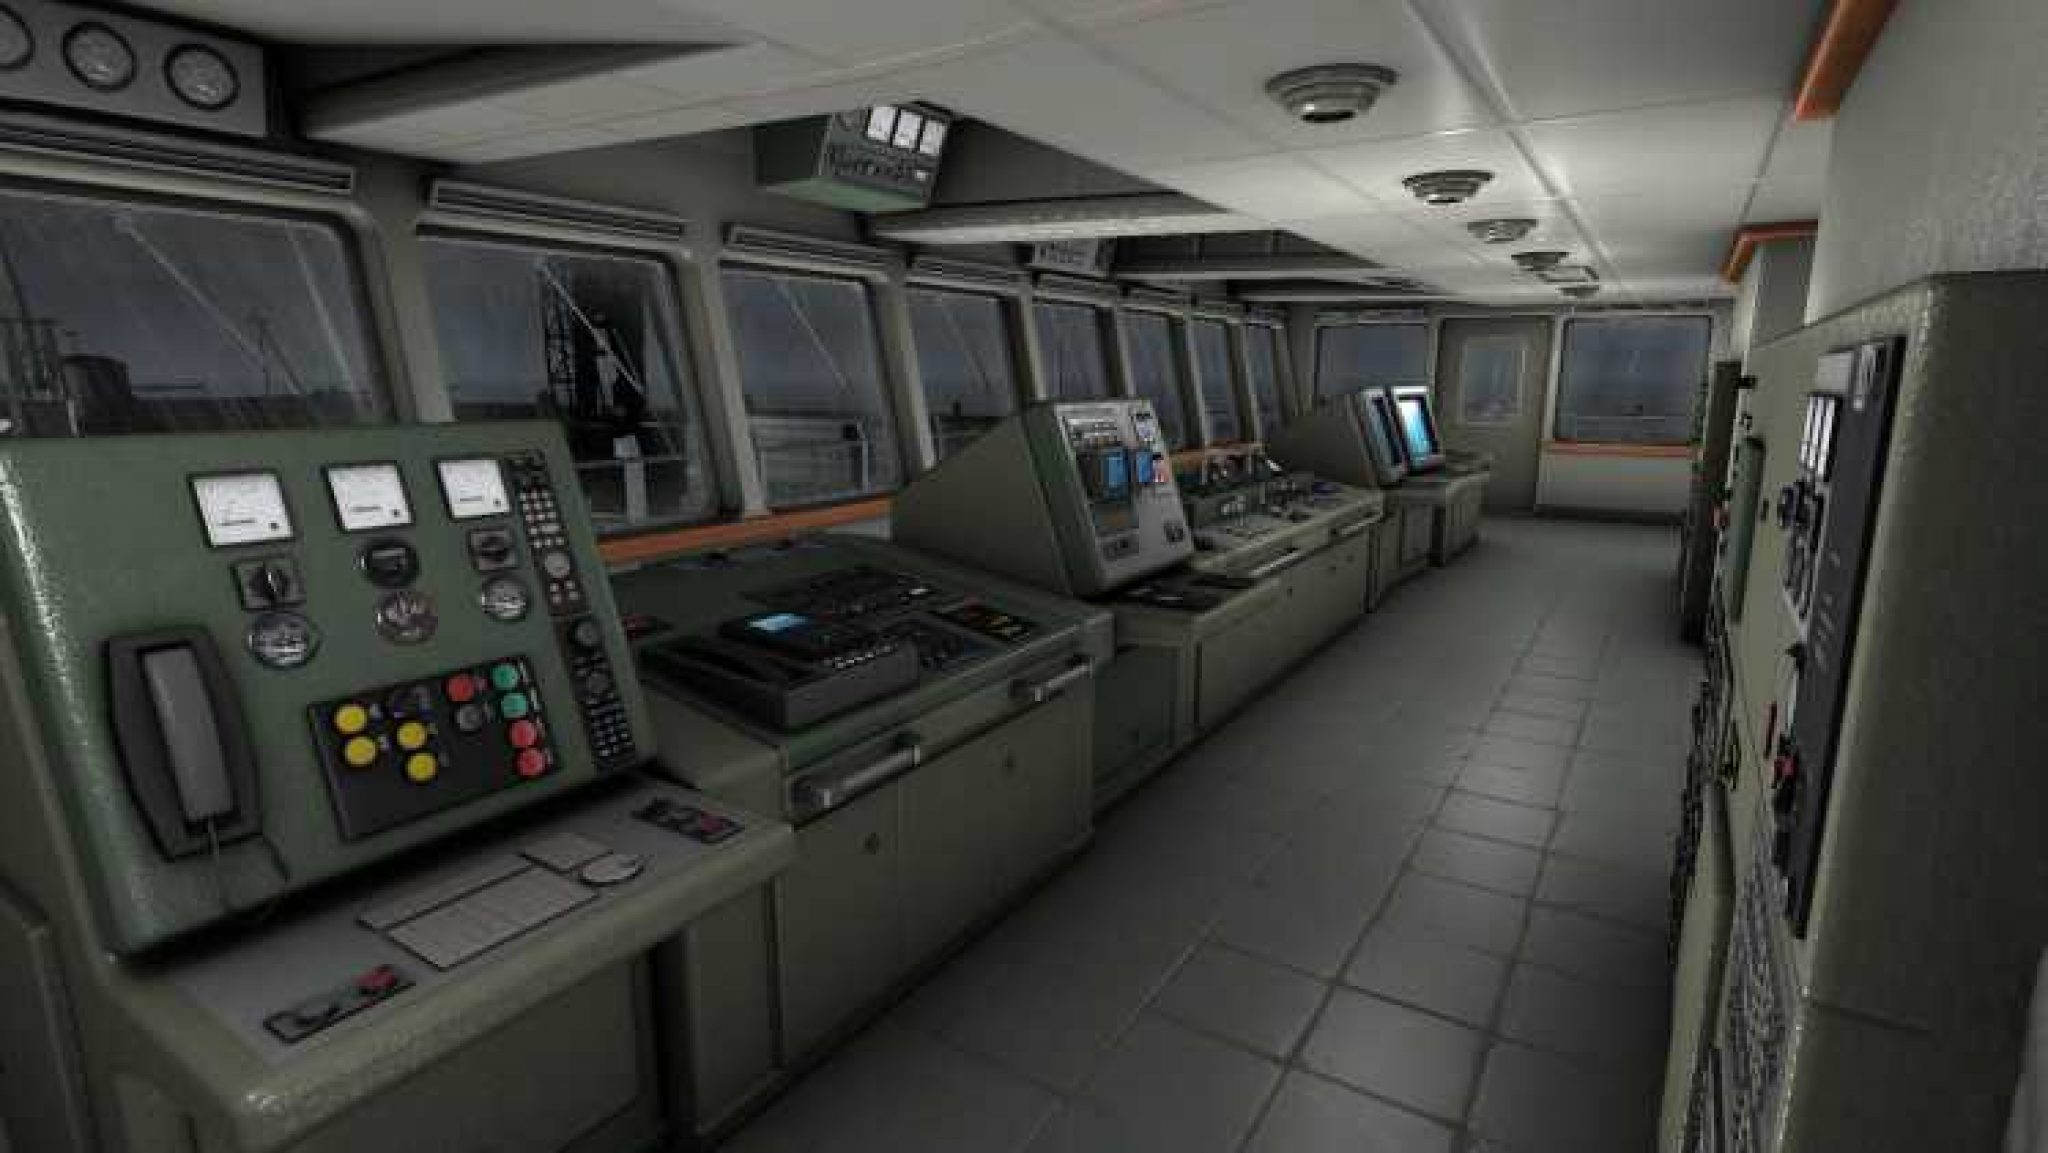 european ship simulator download